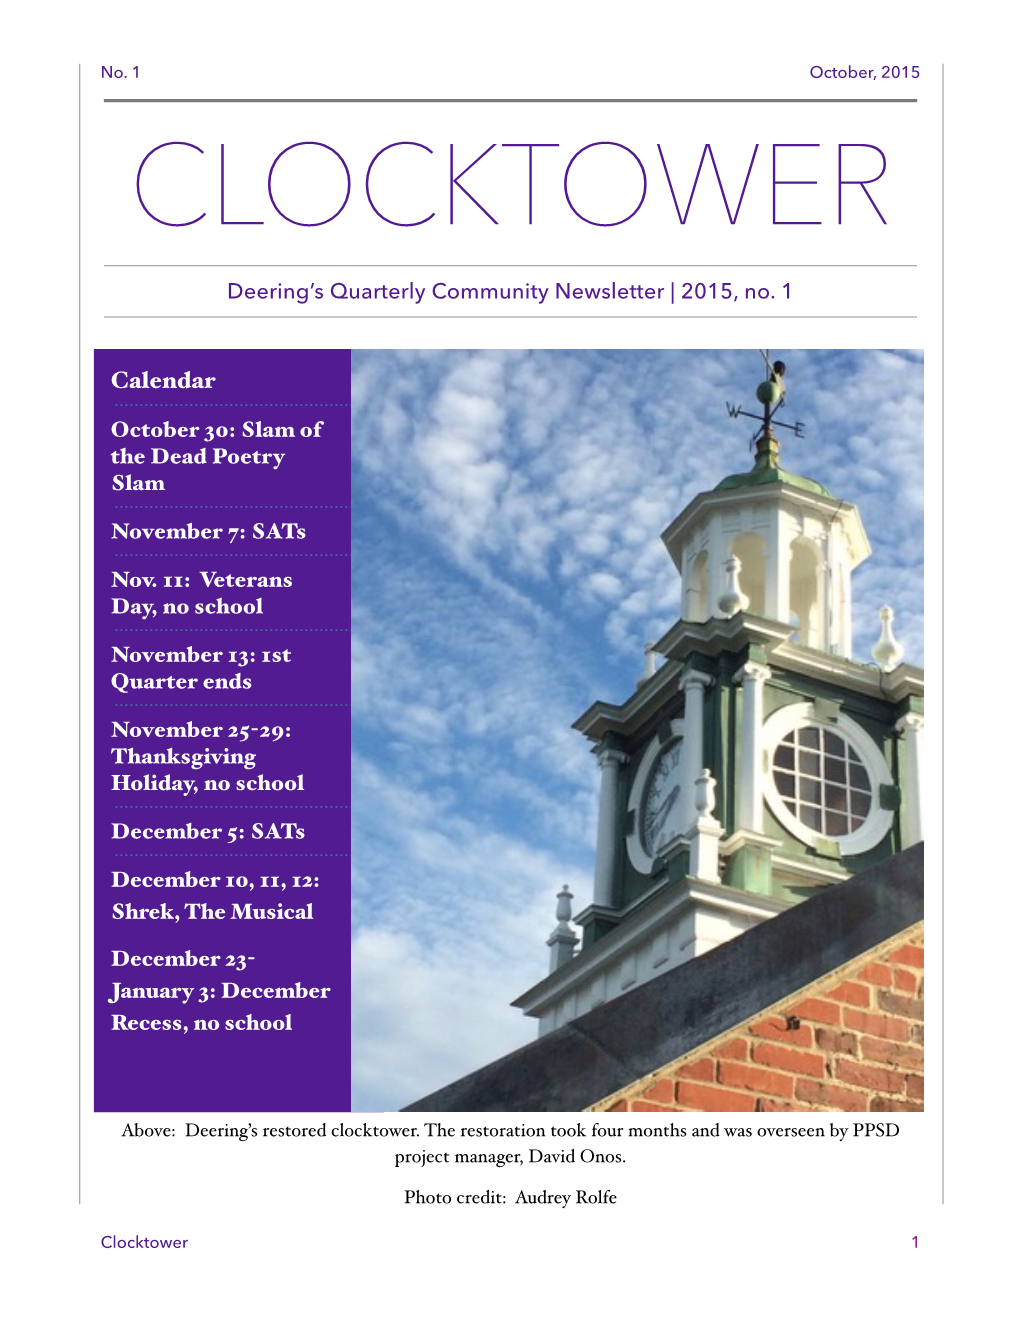 October 2015 Clocktower